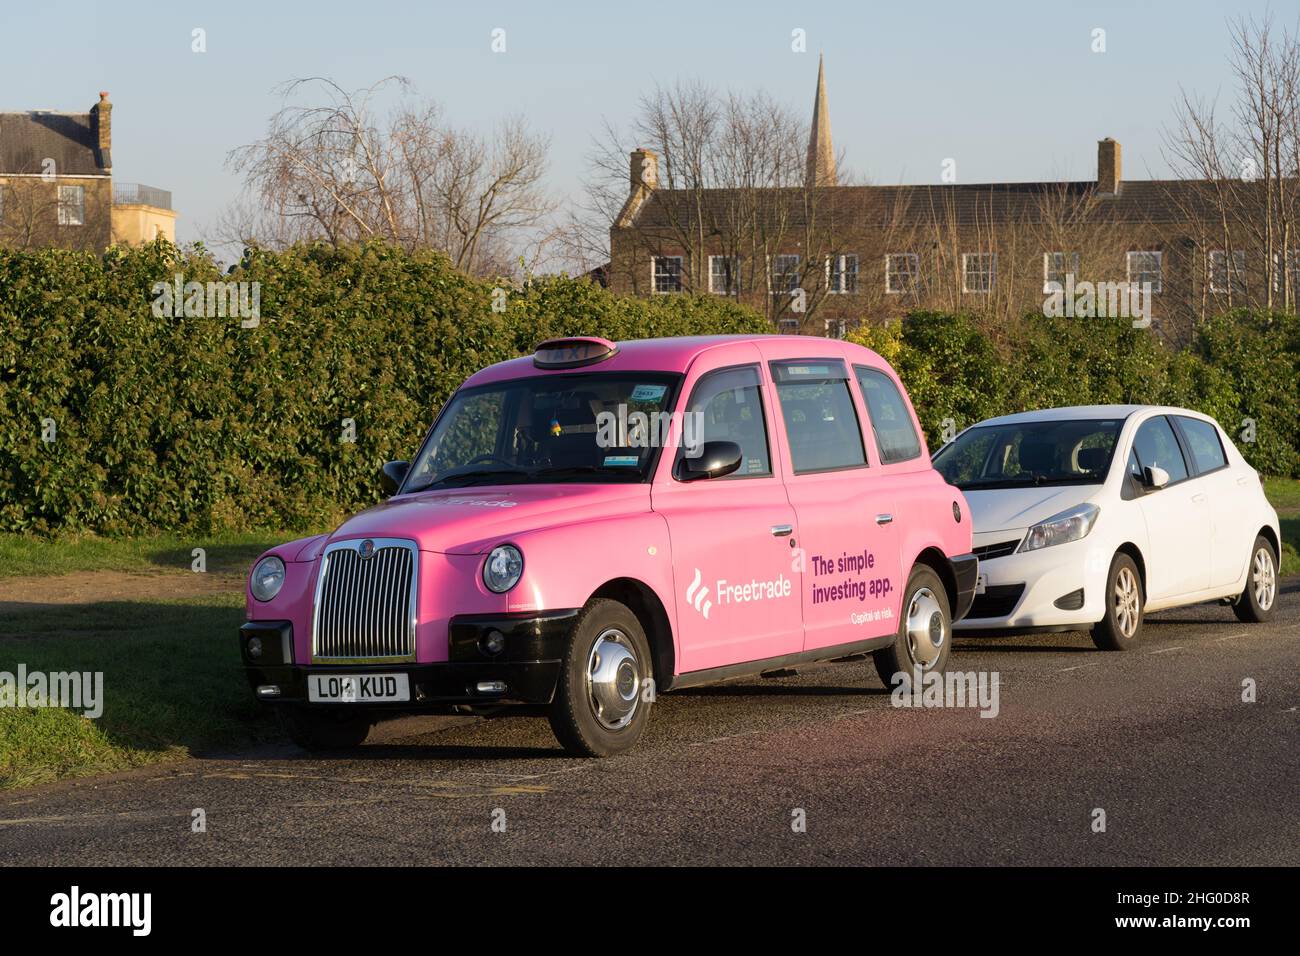 Vista frontale di tre quarti del taxi londinese dipinto con logo pubblicitario per Freetrade , la semplice app di investimento, visto nel villaggio di Blackheath Londra Inghilterra Foto Stock